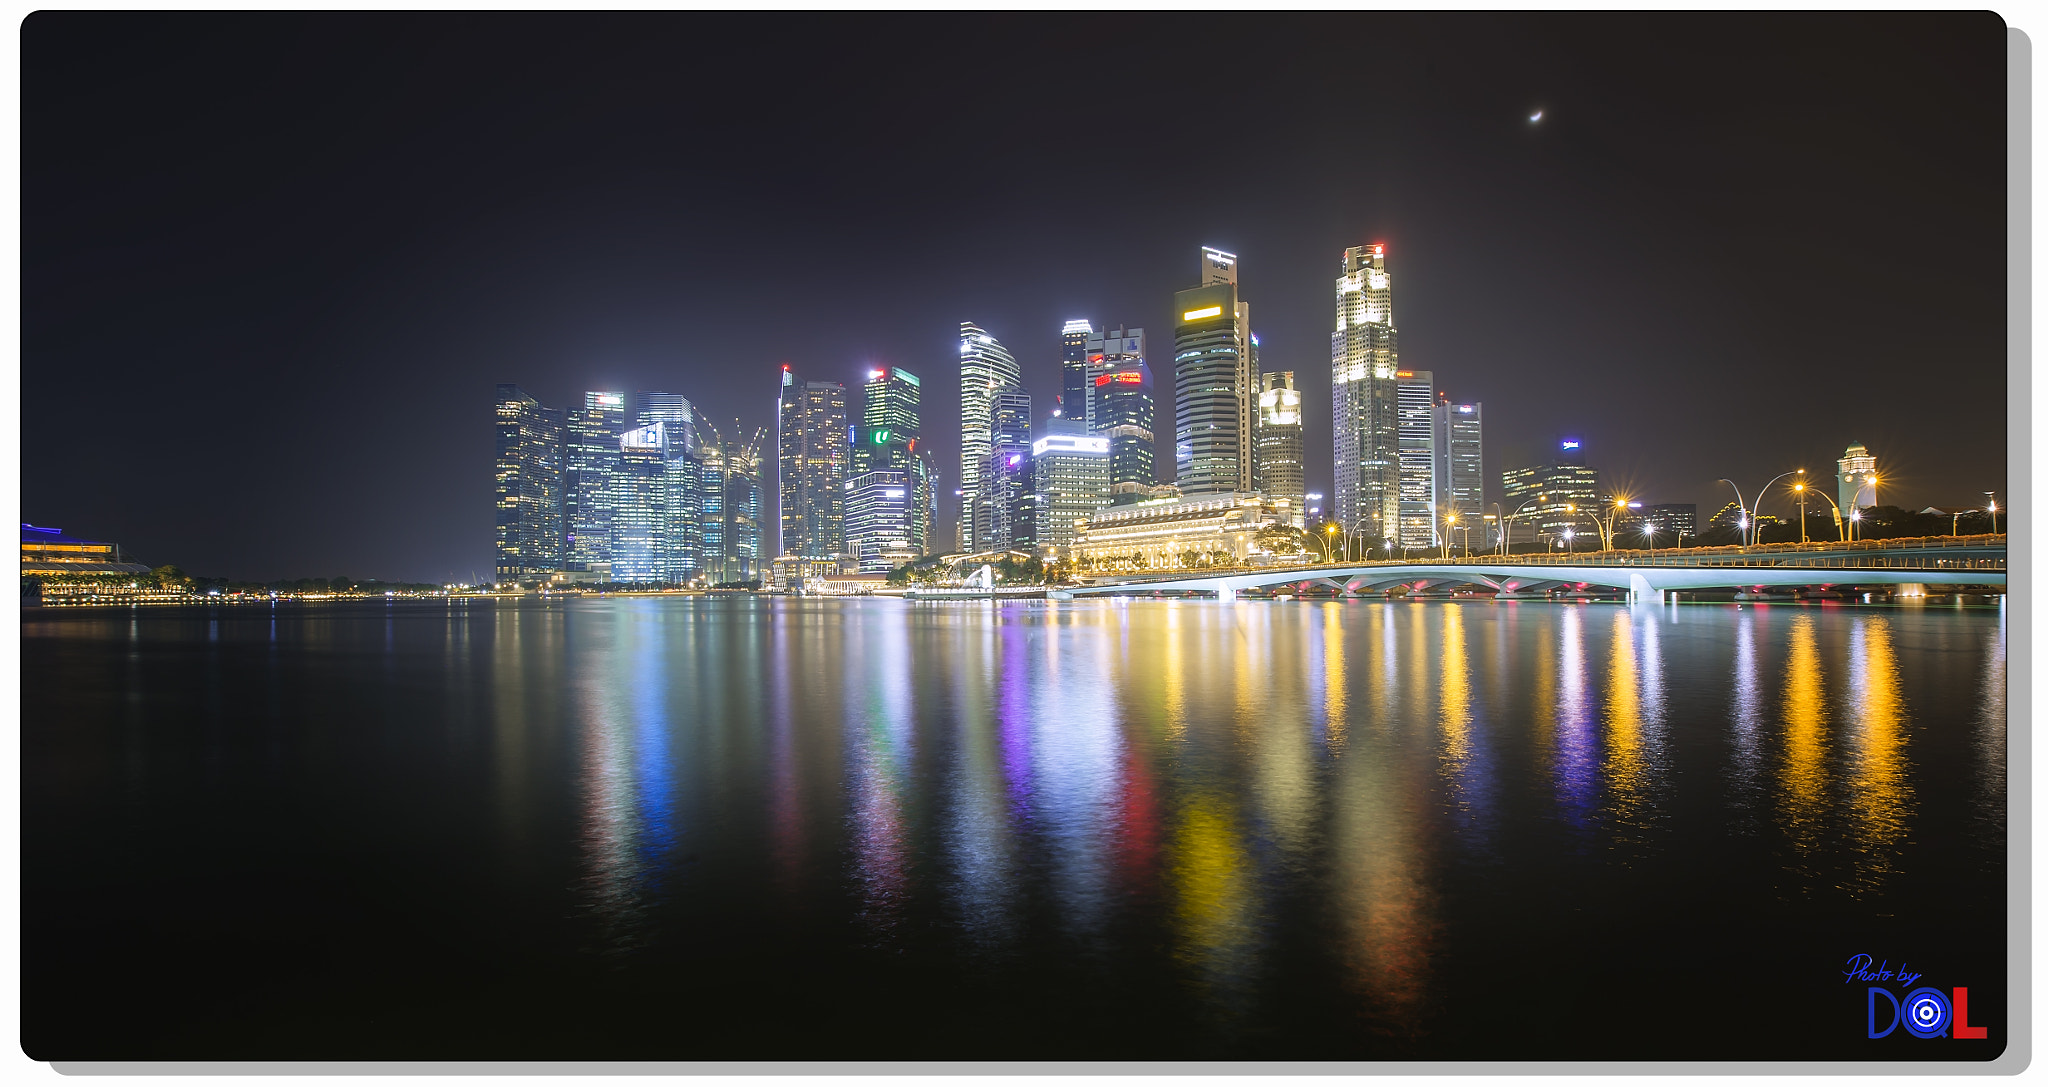 Nikon D4 sample photo. Marina bay at night photography